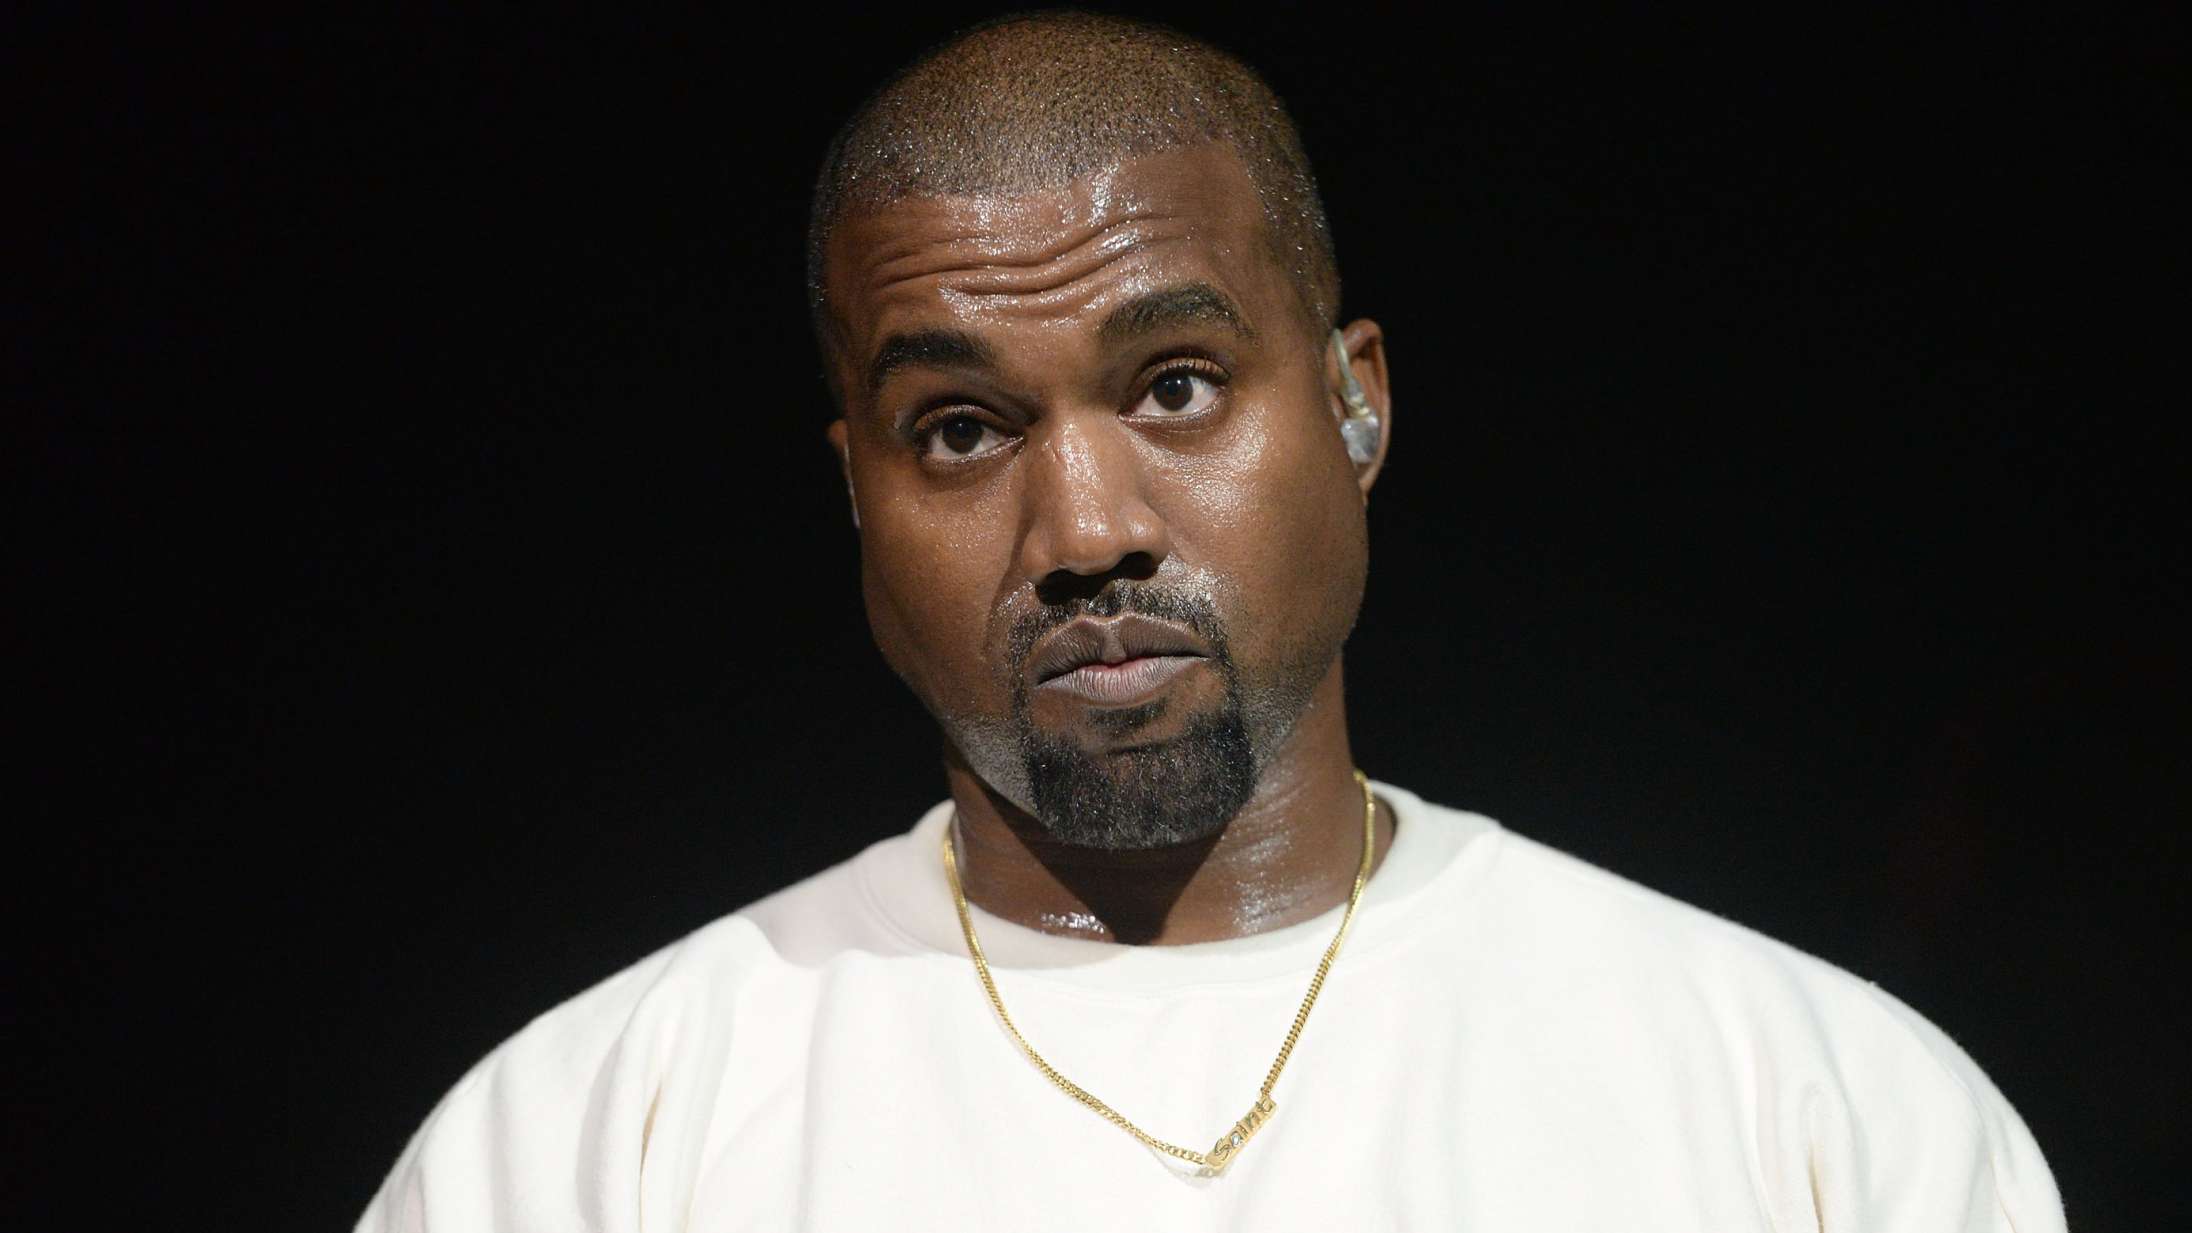 Kanye West begraver Pete Davidson levende i ny musikvideo